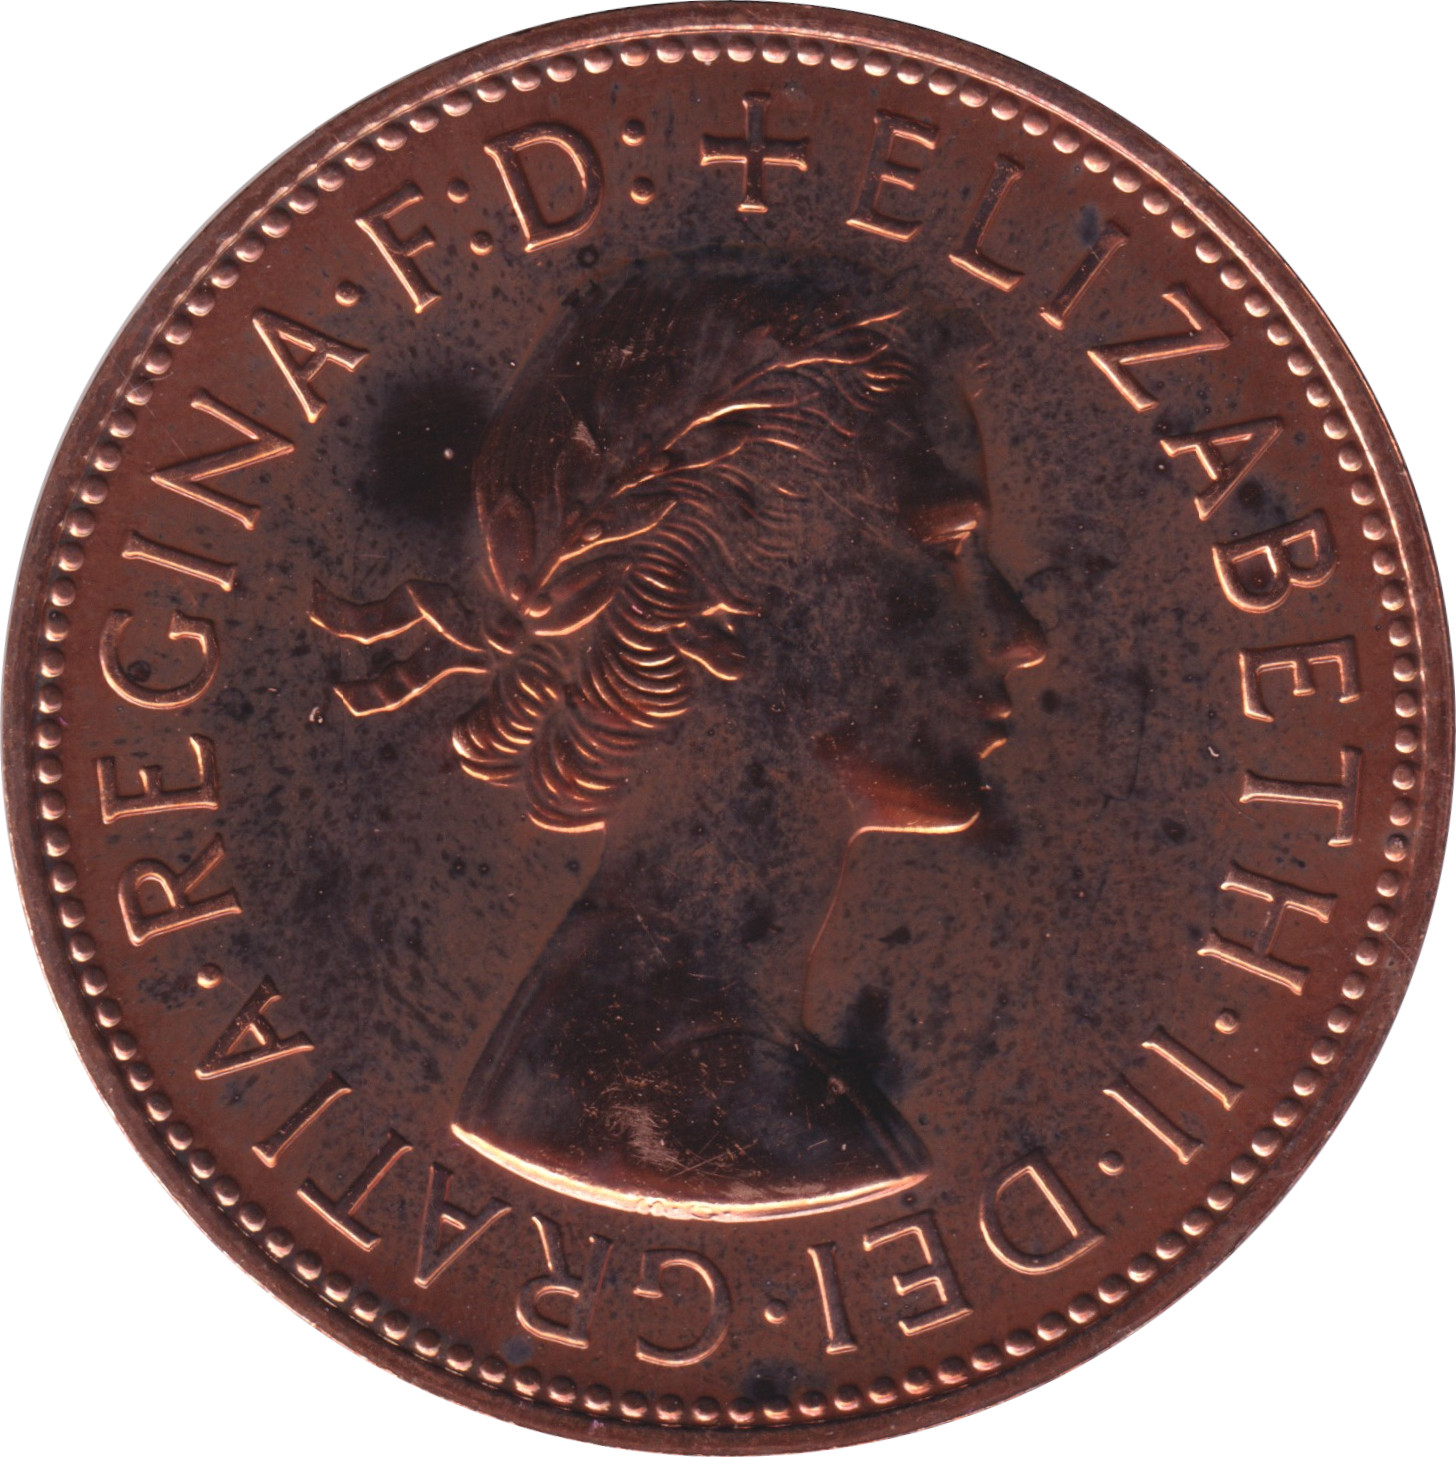 1 penny - Elizabeth II